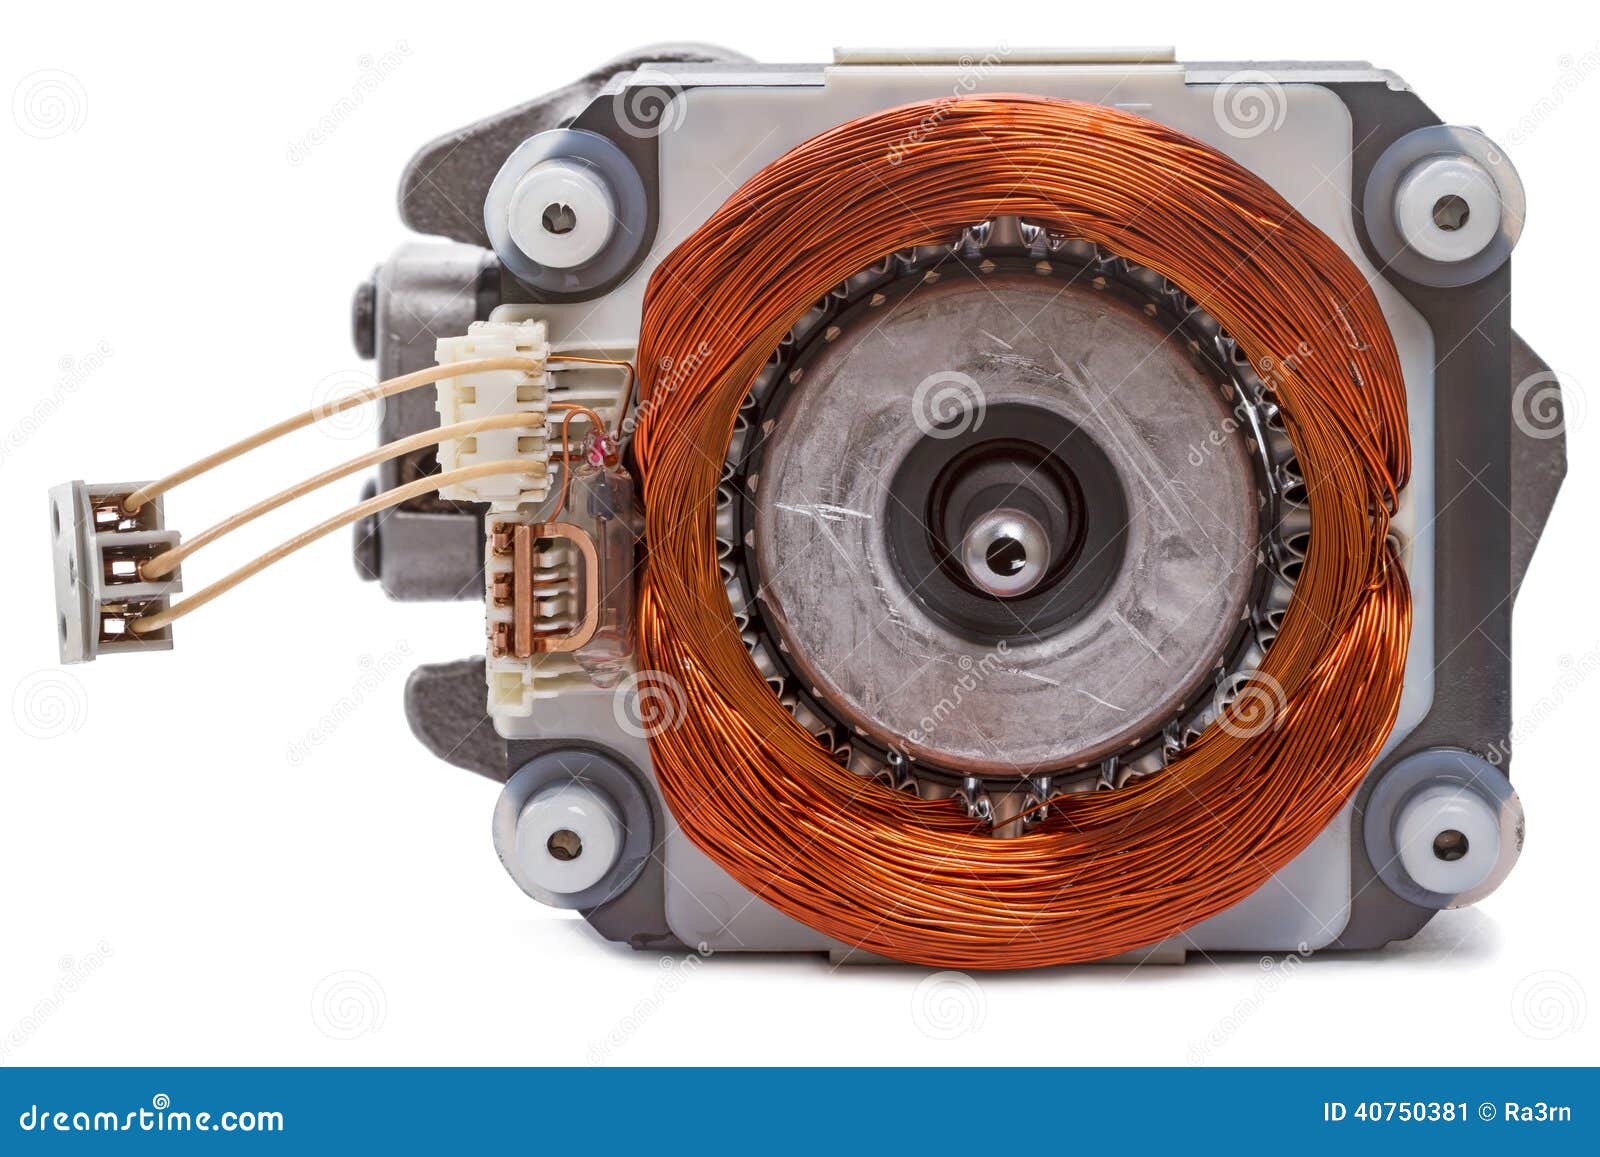 Motore elettrico monofase immagine stock. Immagine di industria